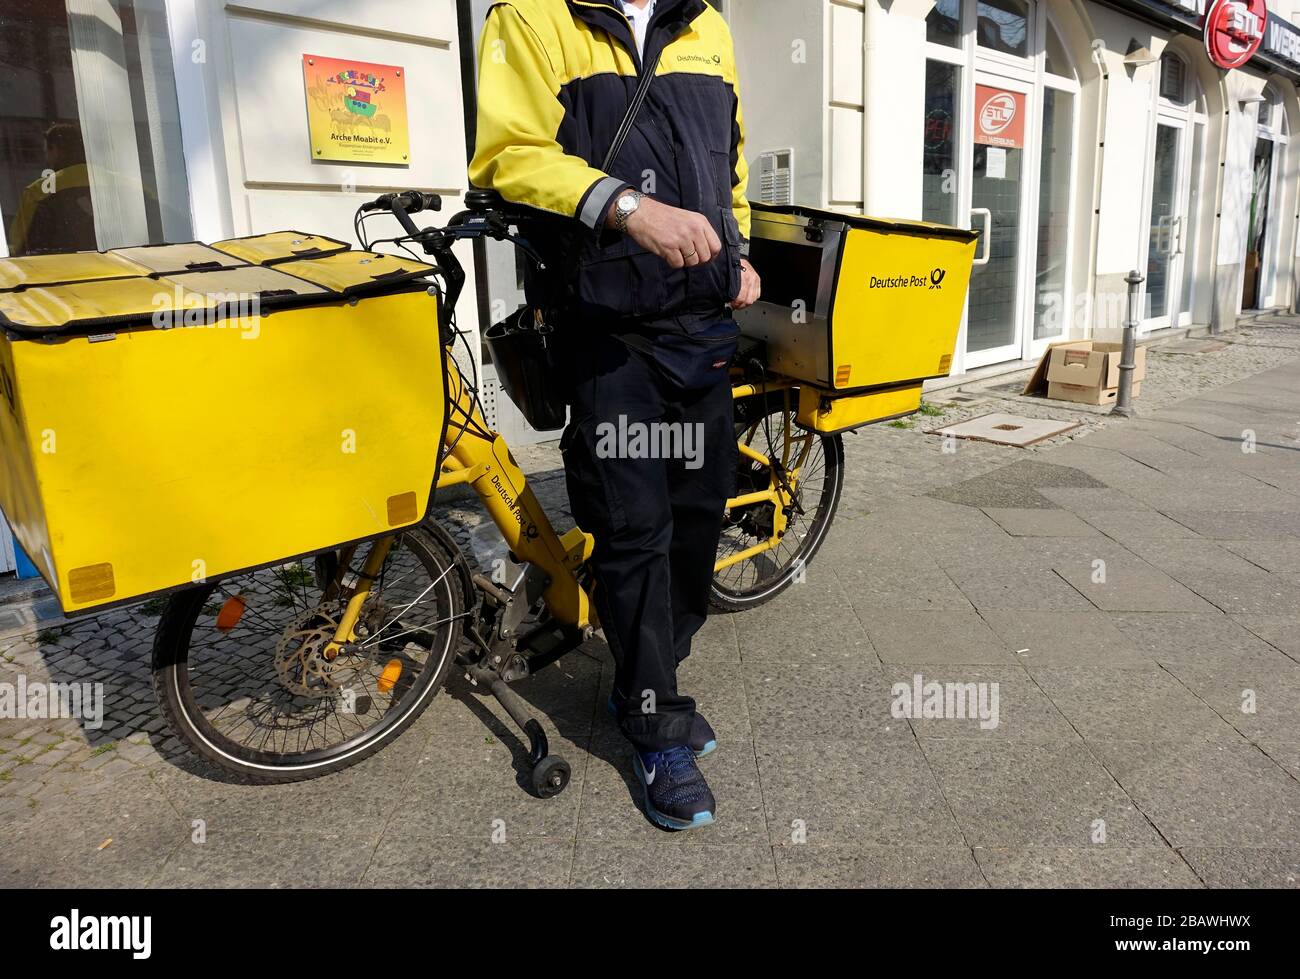 Postman of the Deutsche Post Stock Photo